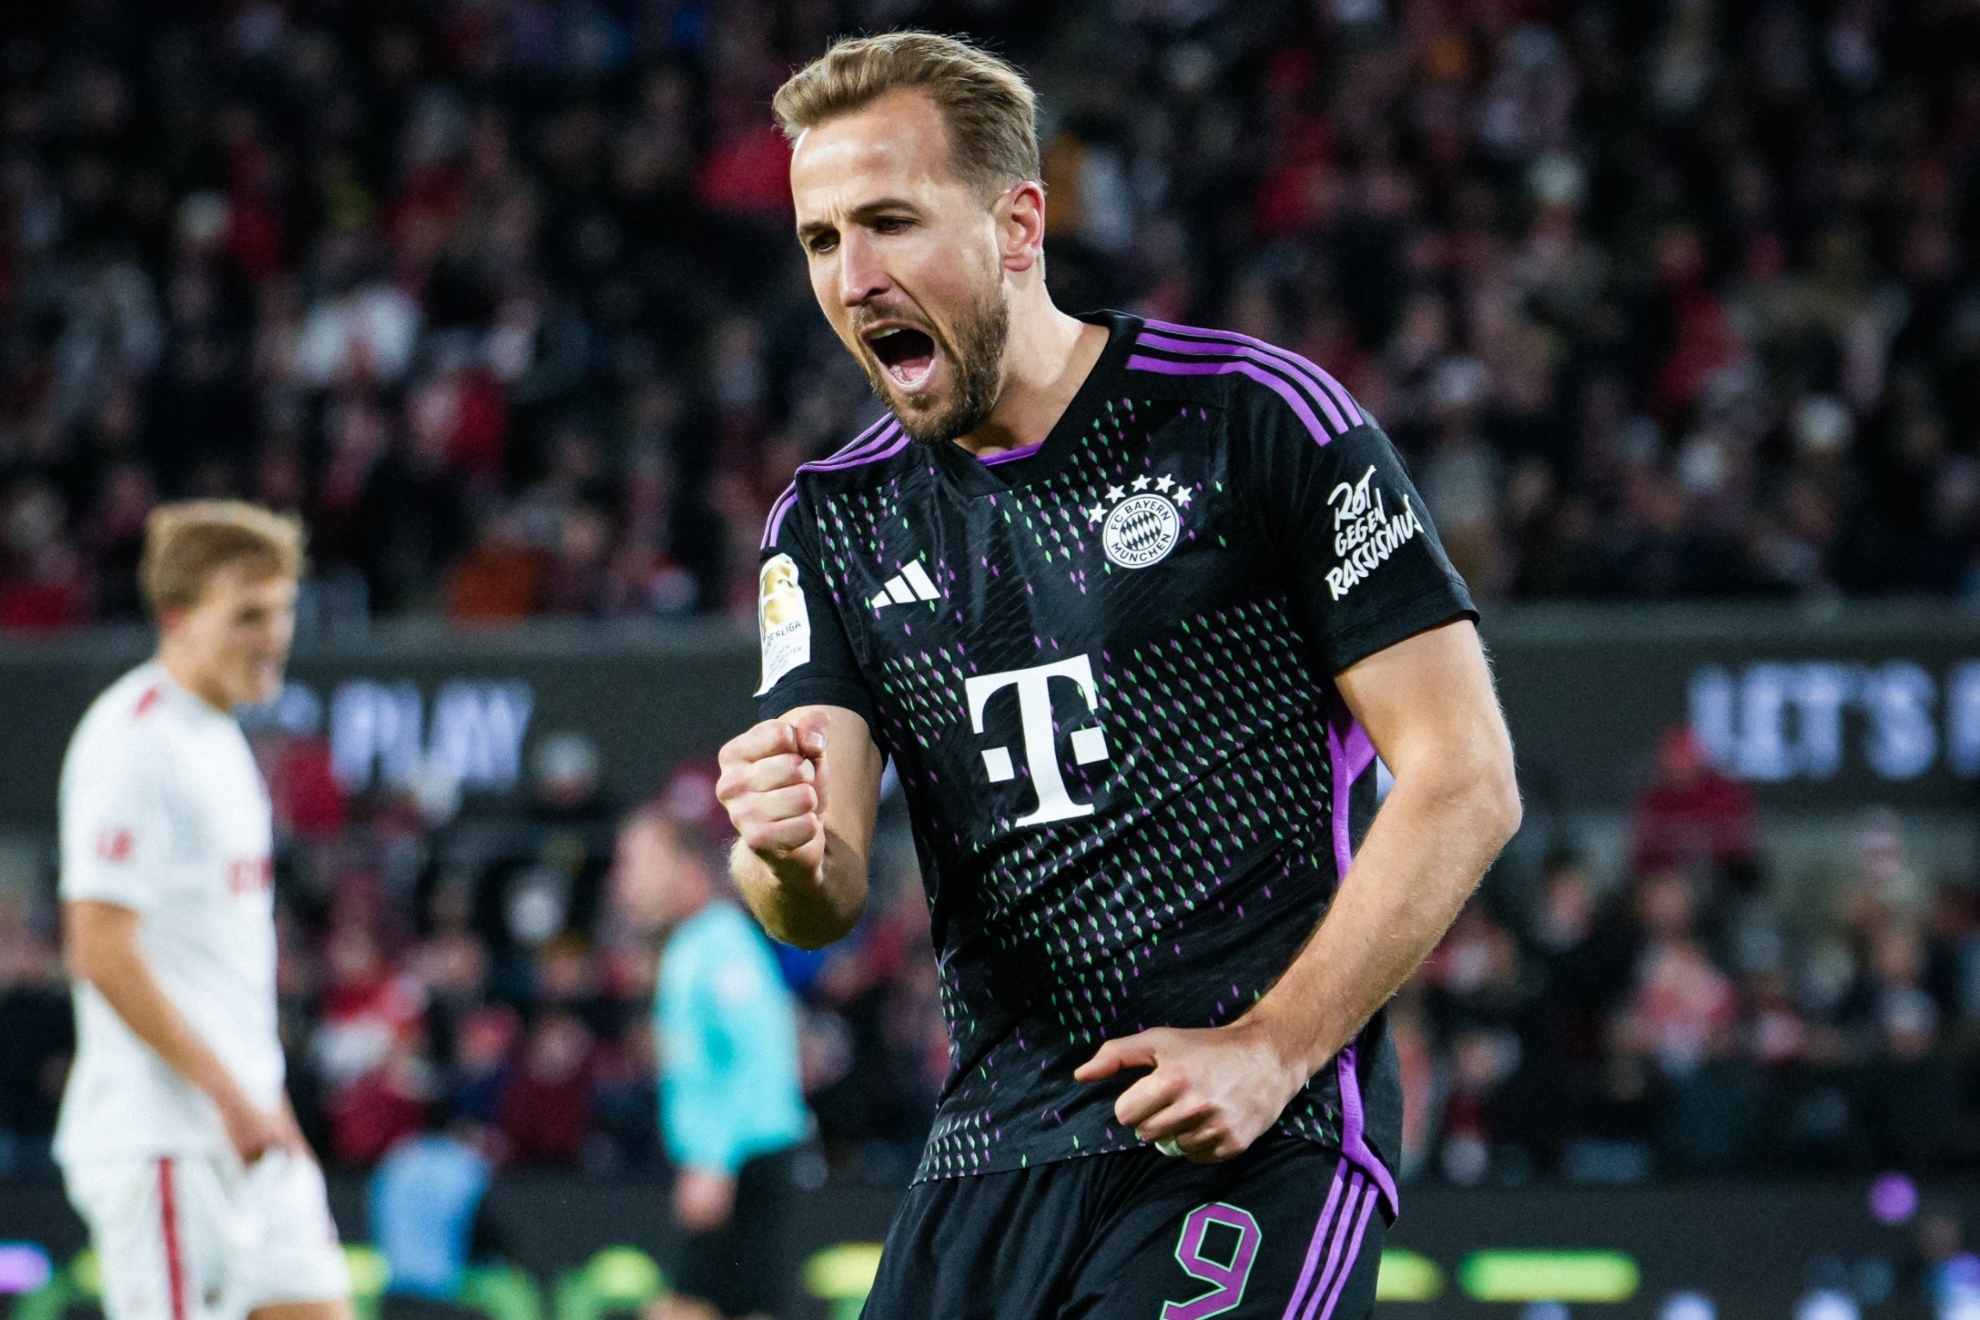 El Bayern gana gracias a otro gol de Kane que sigue rompiendo r�cords